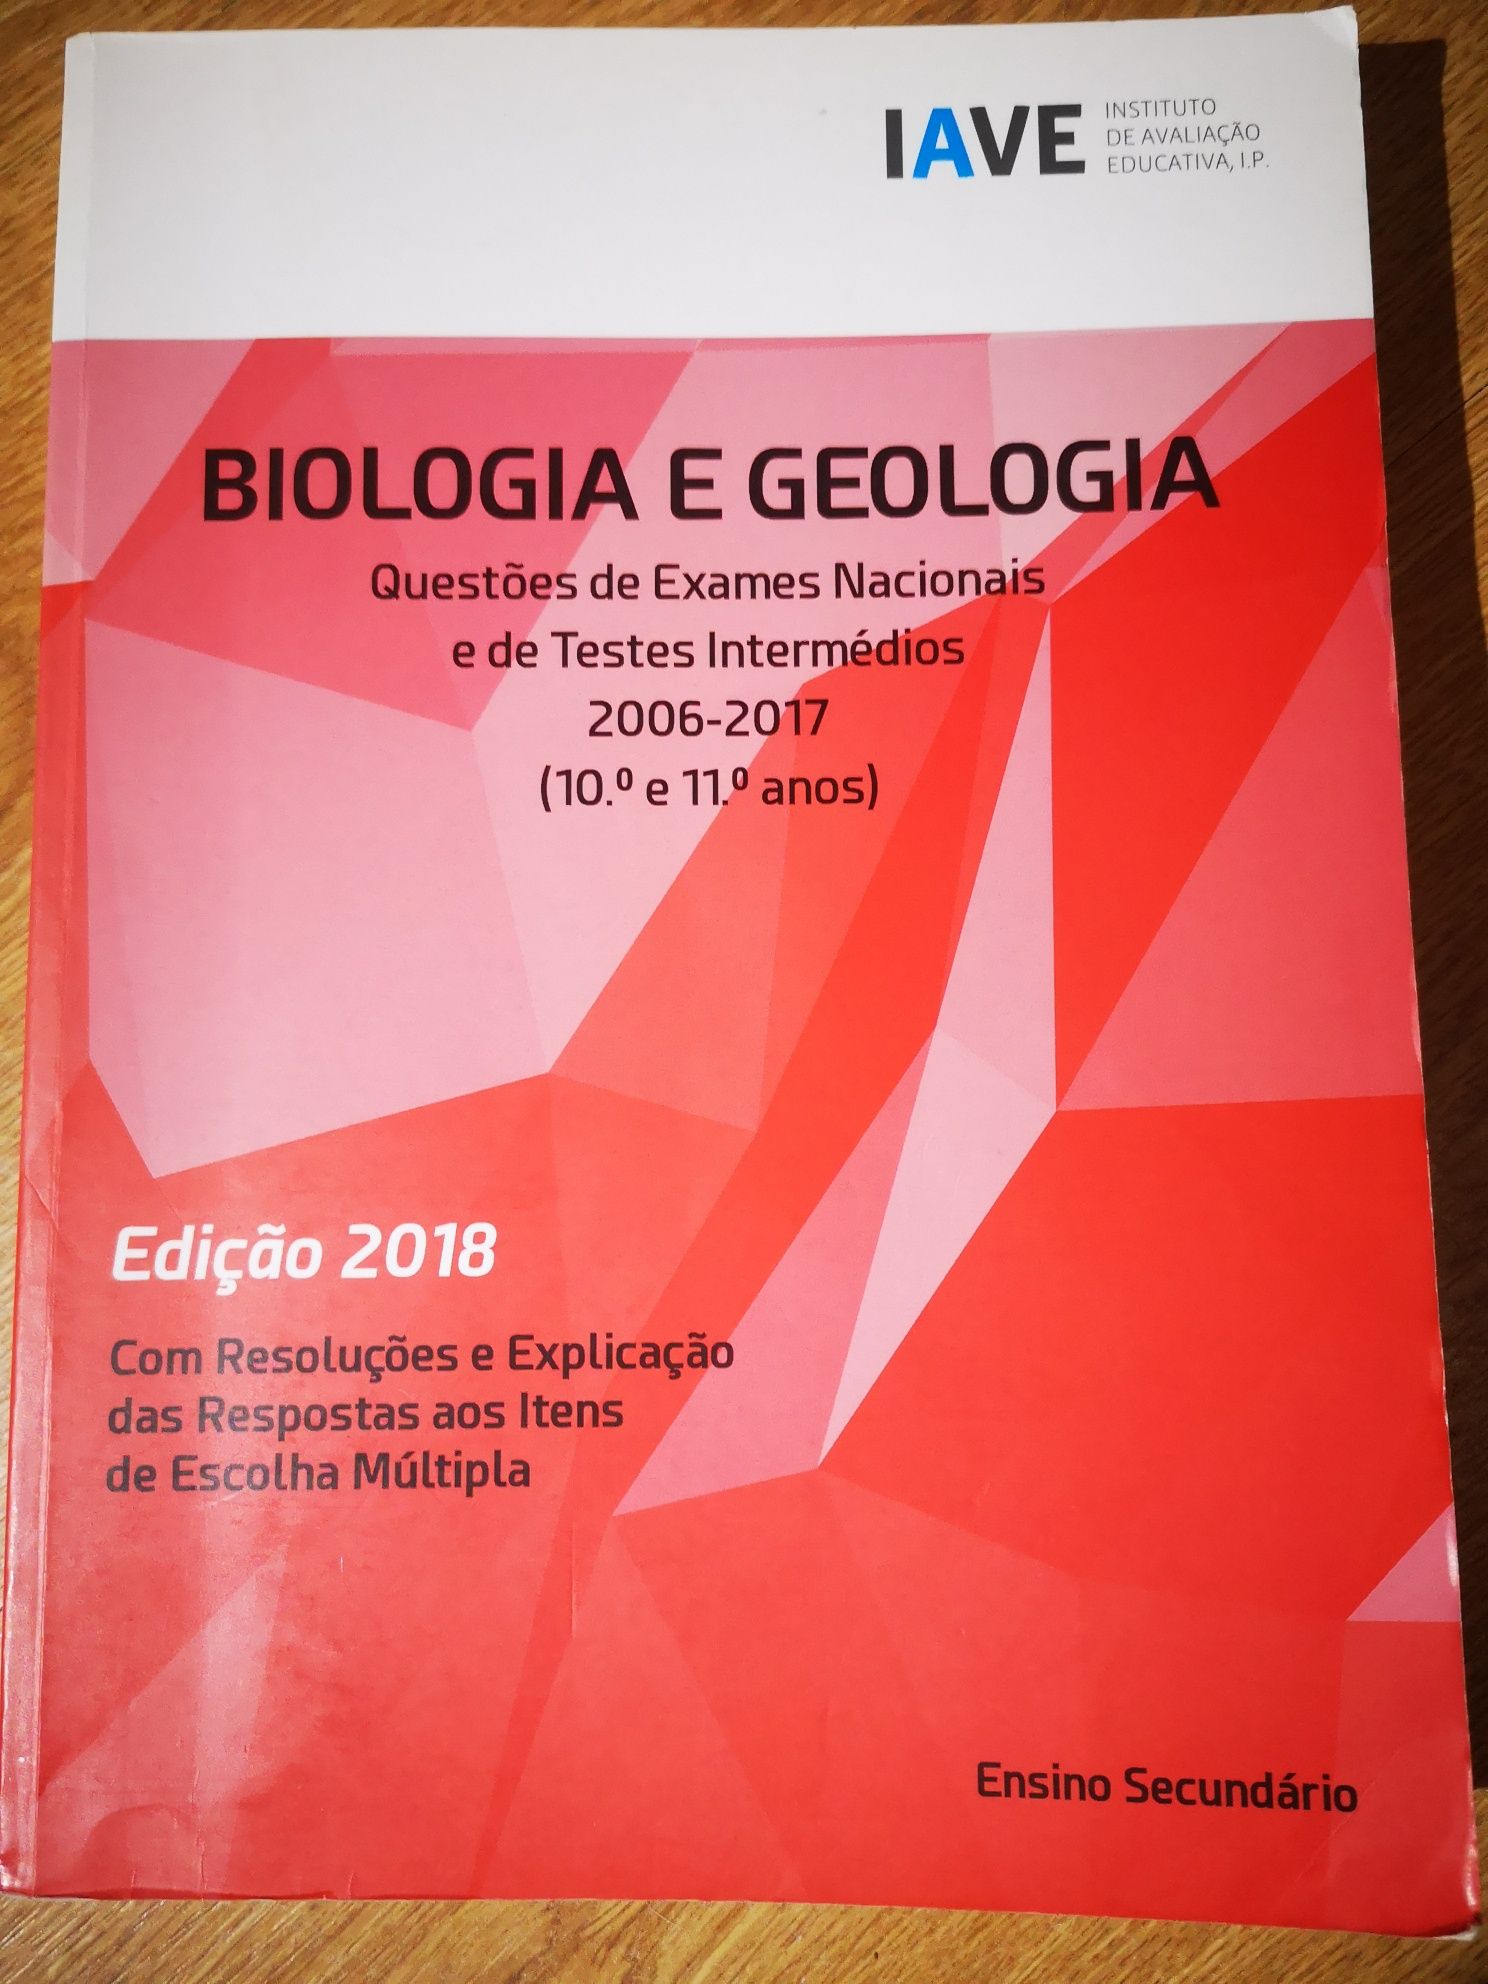 Livro IAVE Biologia e Geologia